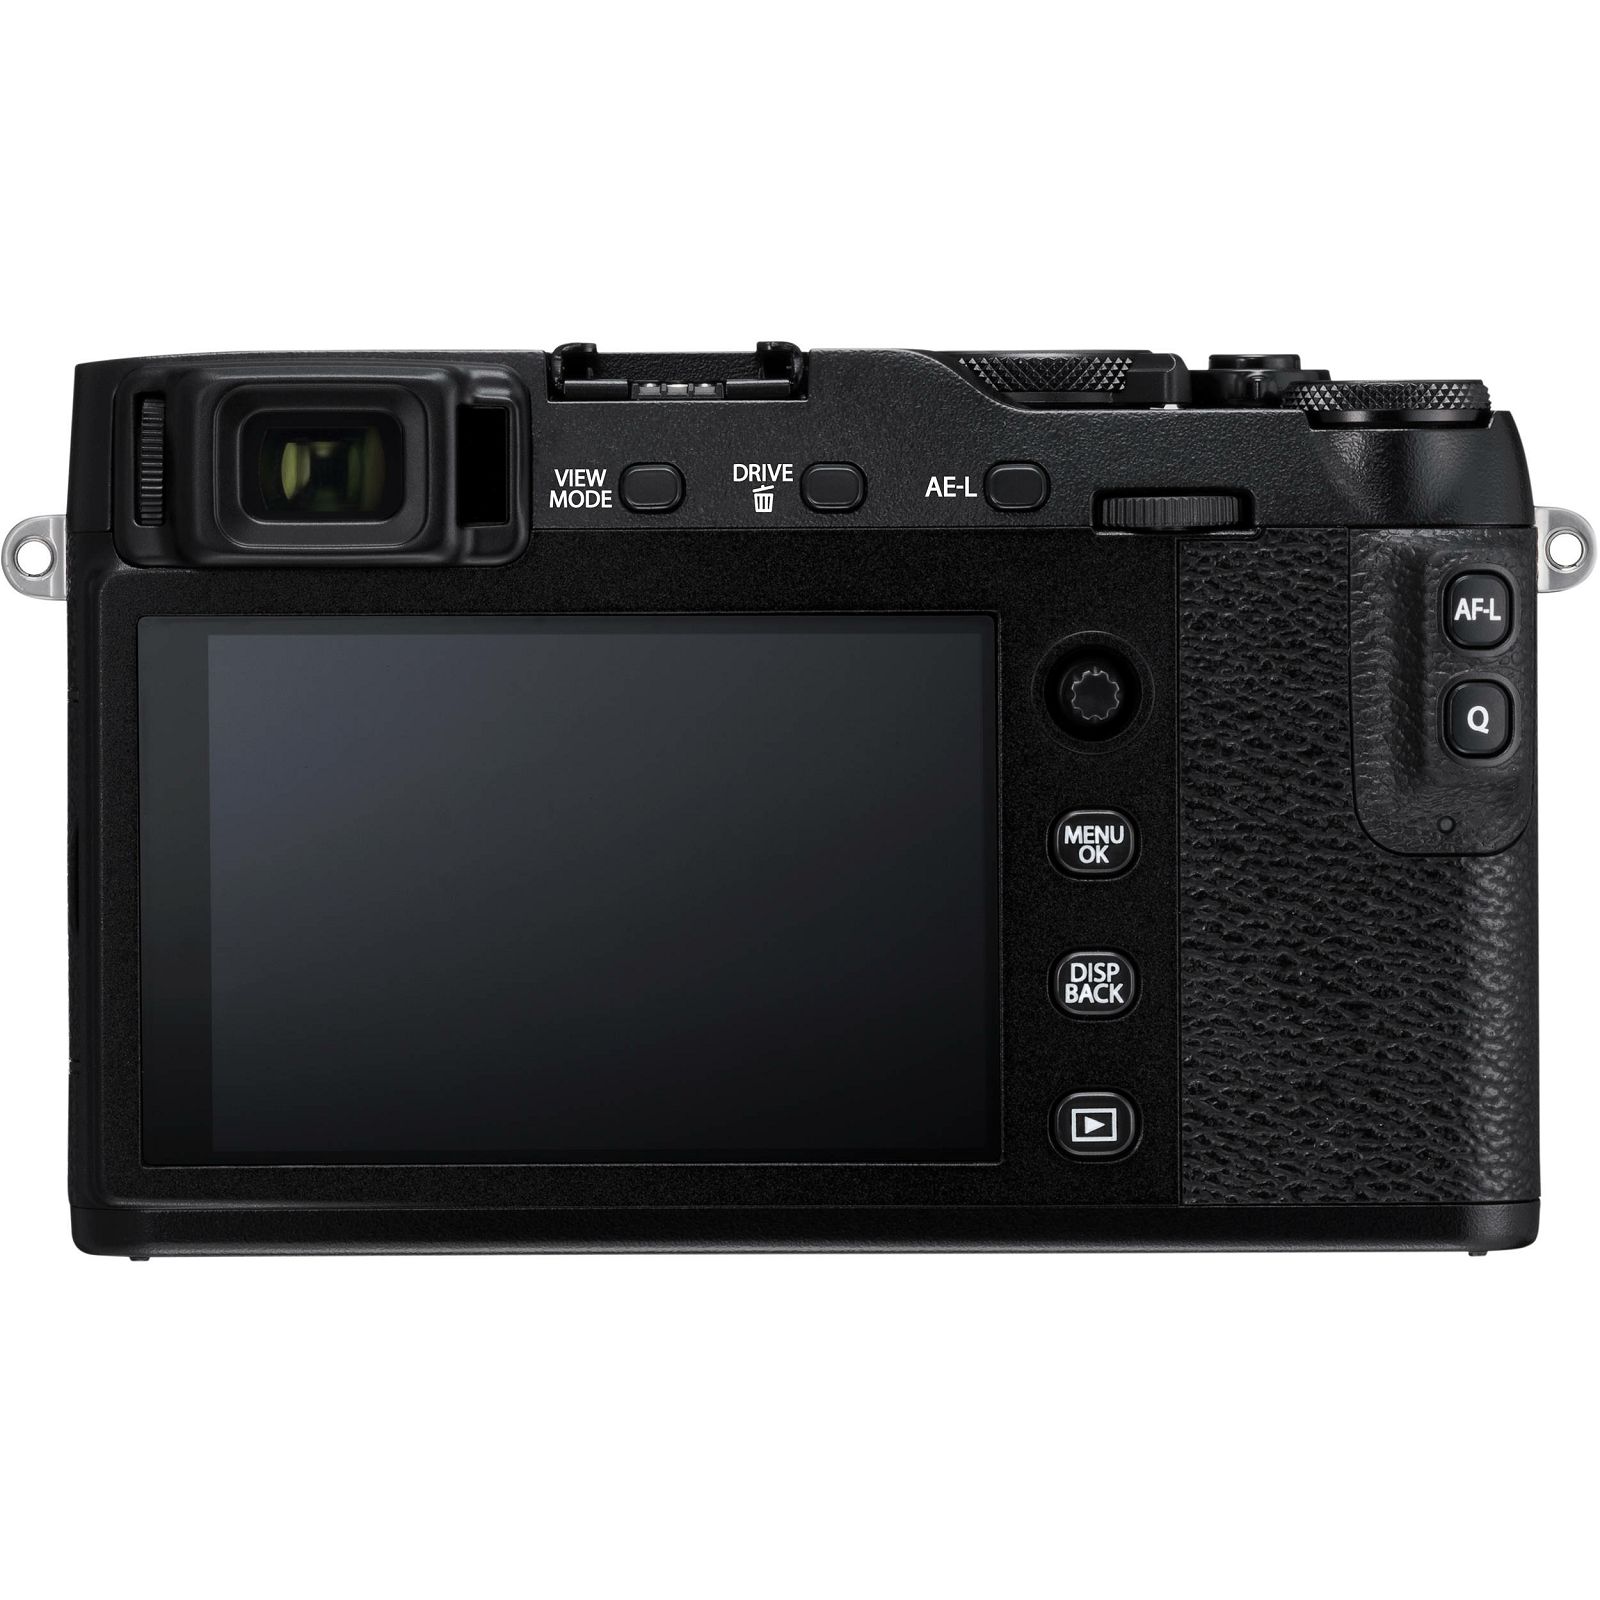 Fujifilm X-E3 + XF 18-55 EE KIT Black crni Digitalni fotoaparat s objektivom XF18-55mm Mirrorless camera Fuji Finepix XE3